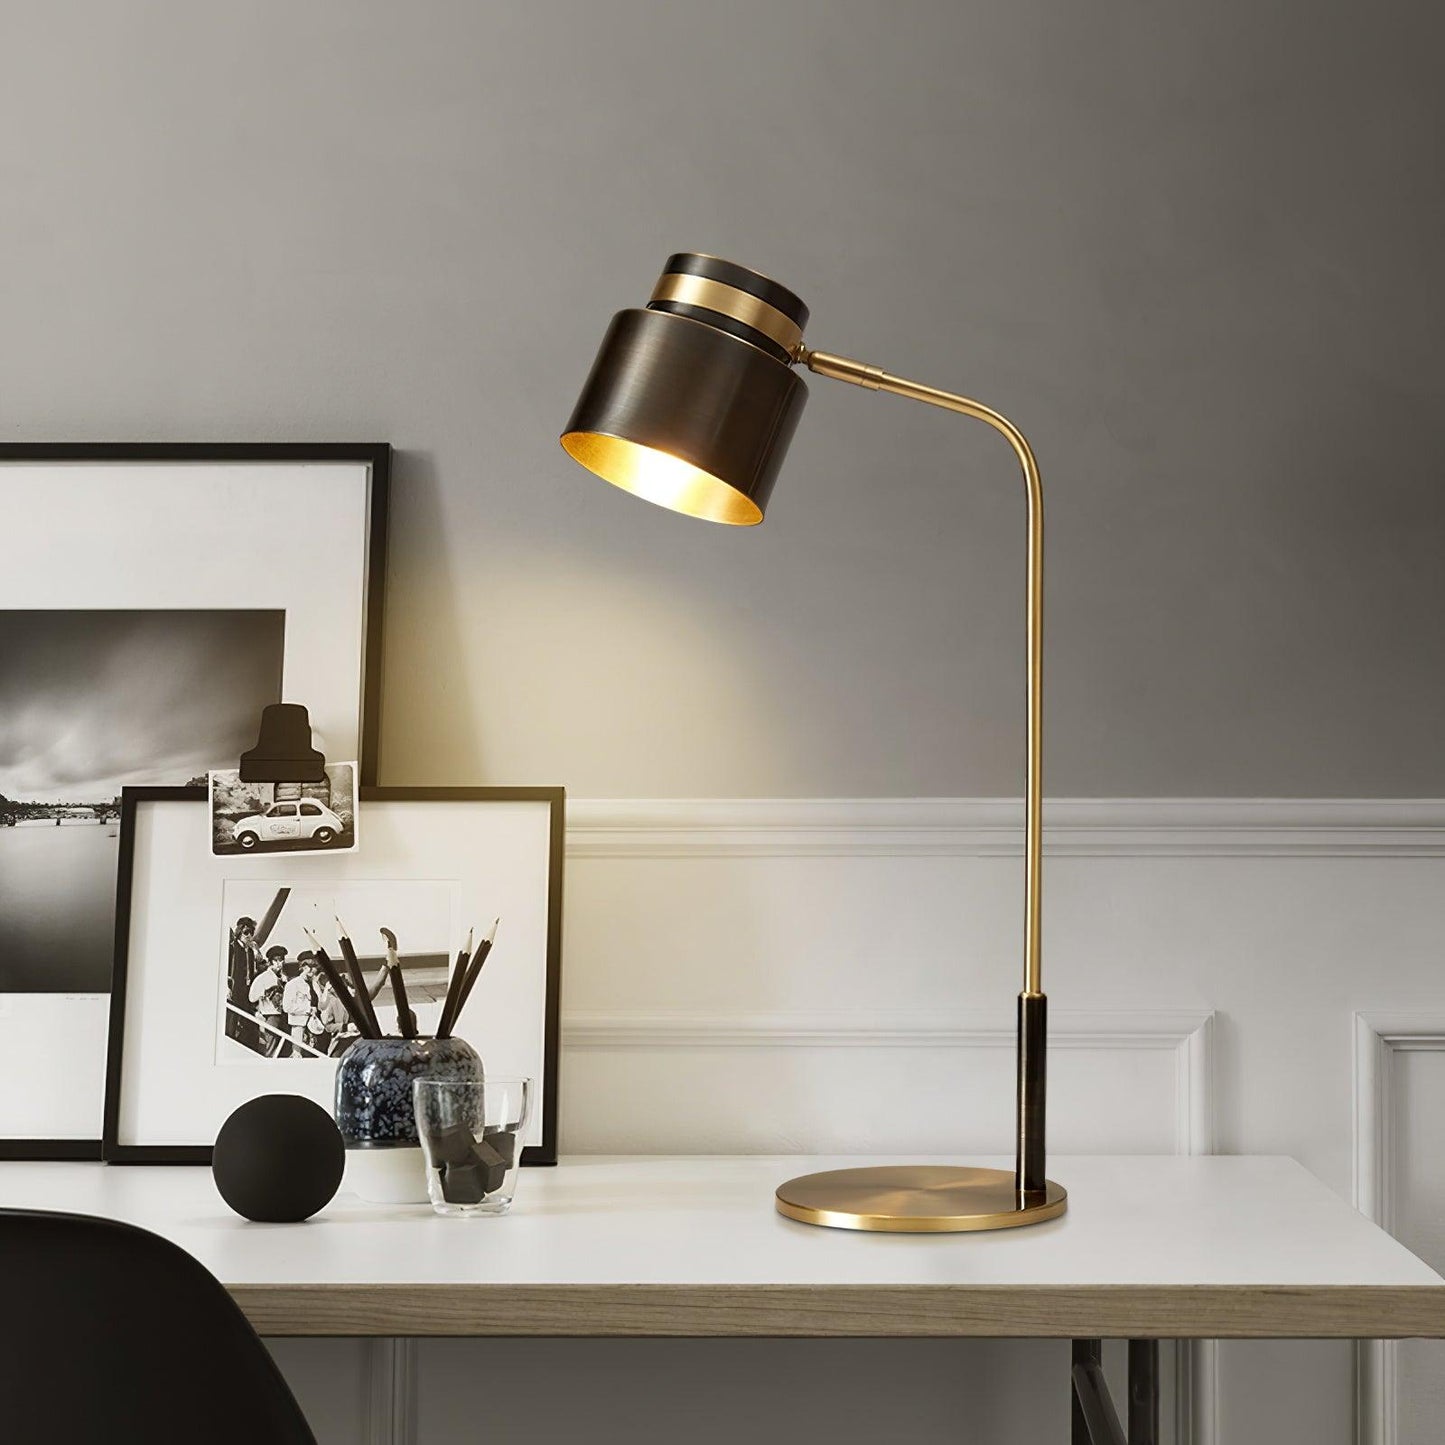 Ari Scandustrial Table Lamp